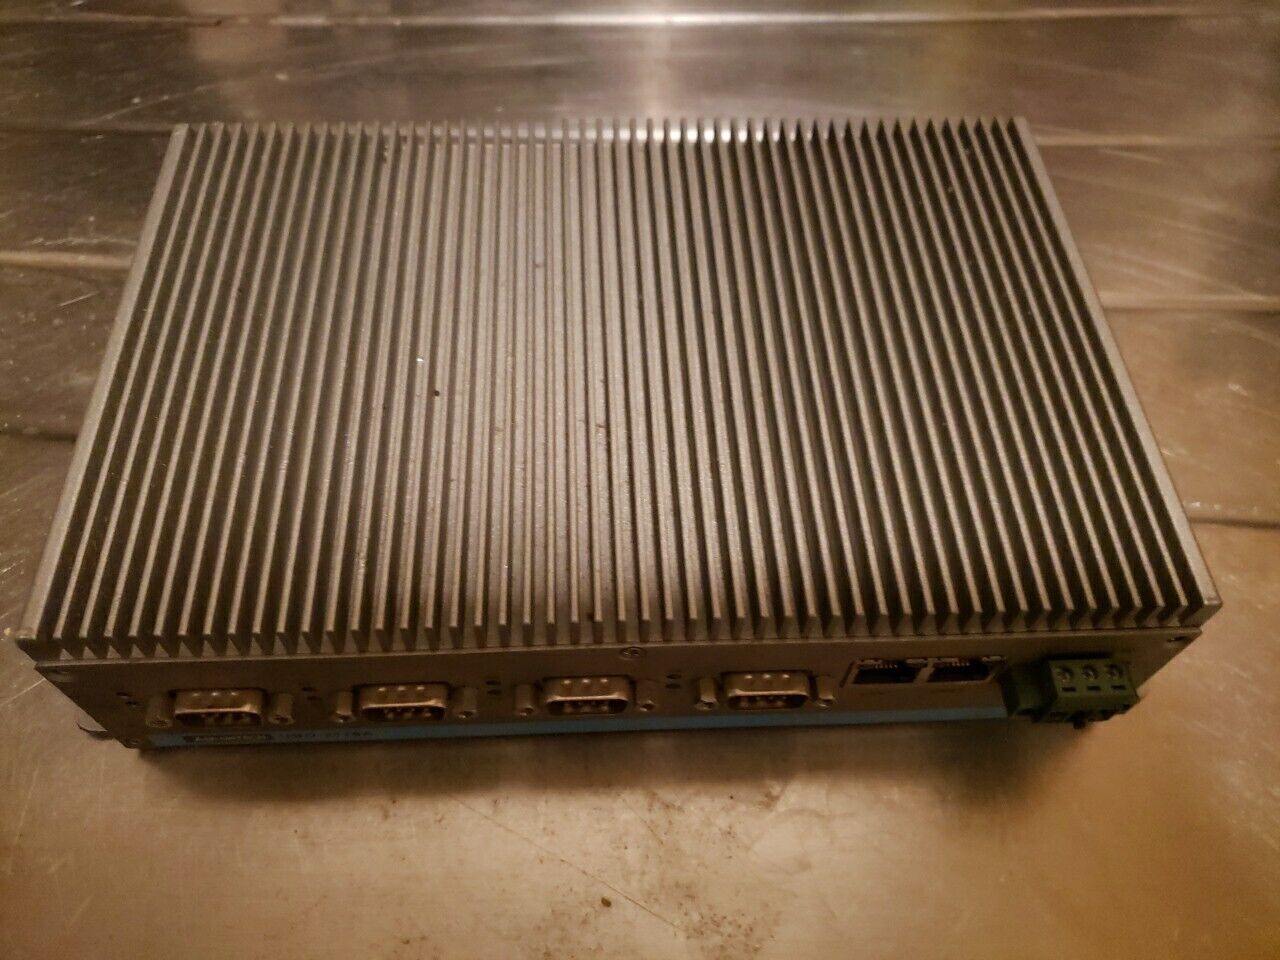 Advantech UNO-2178A Embedded Computer